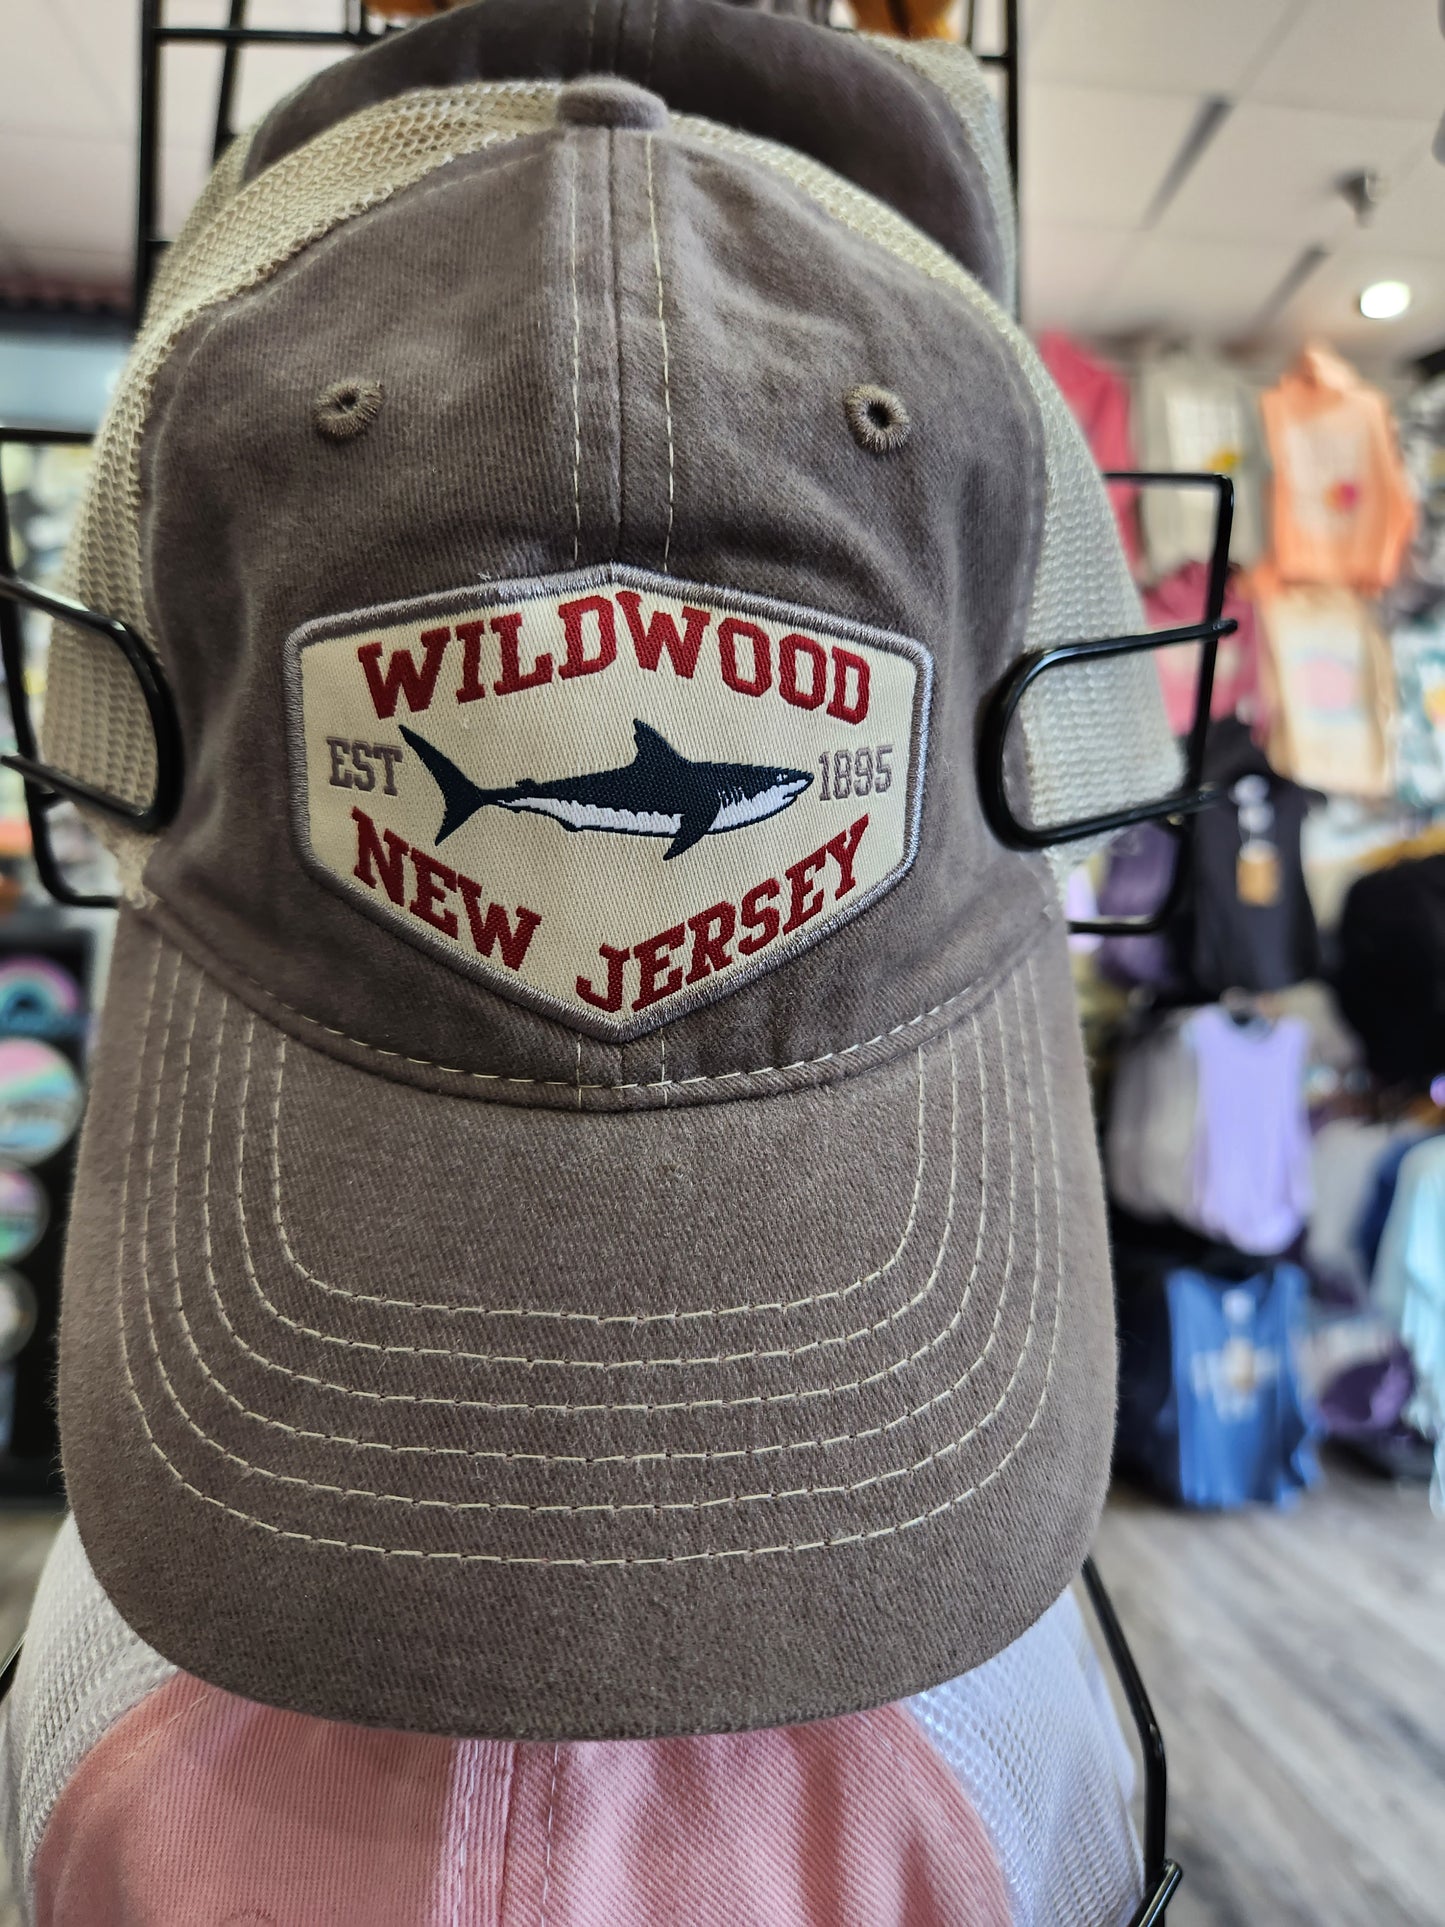 Wildwood Shark 1895 NJ Unisex Grey